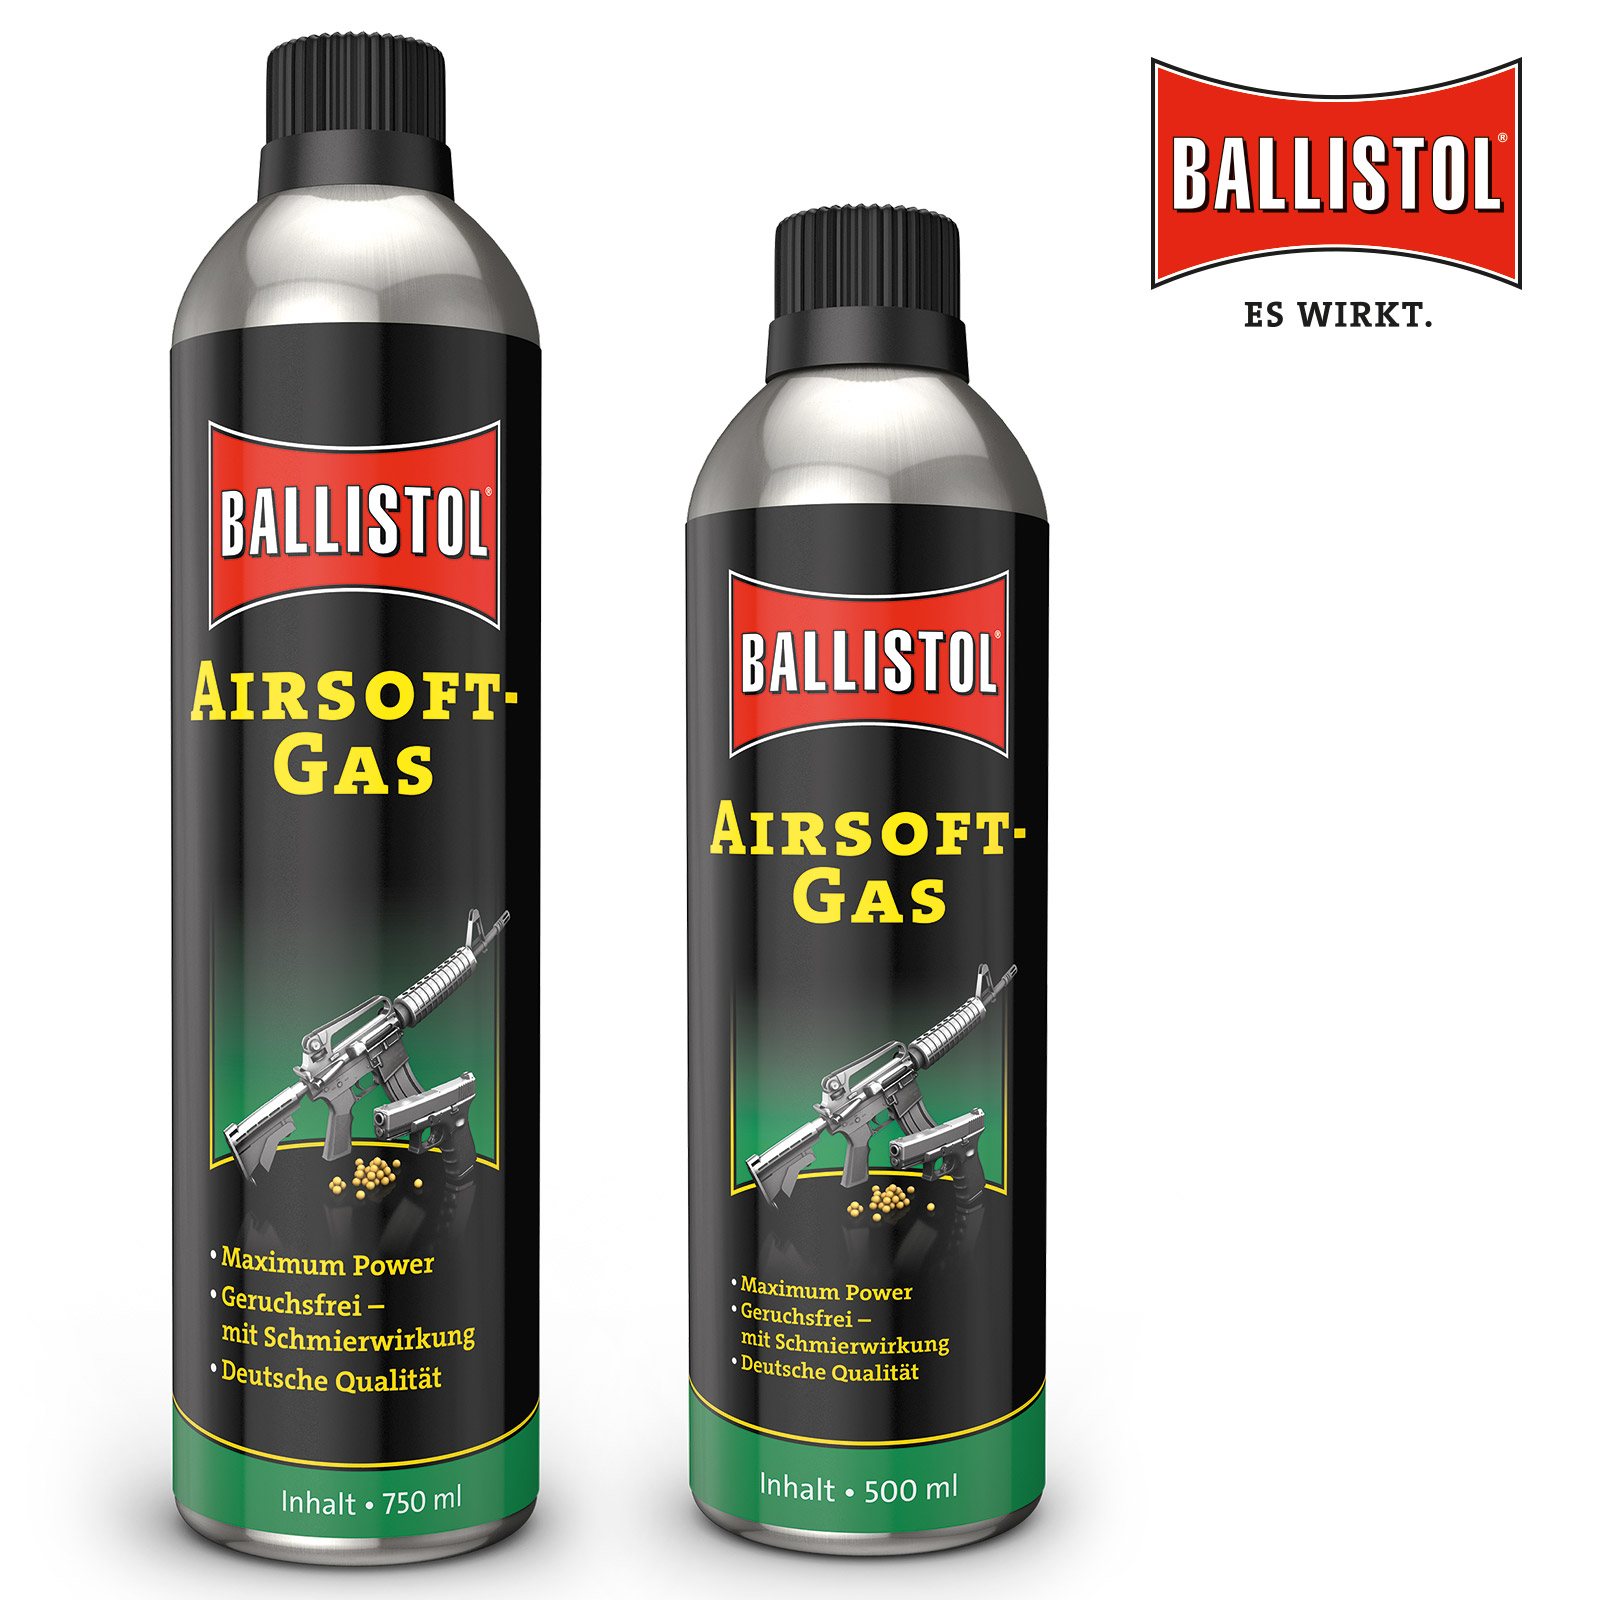 BALLISTOL Airsoft-Gas von Klever-Ballistol